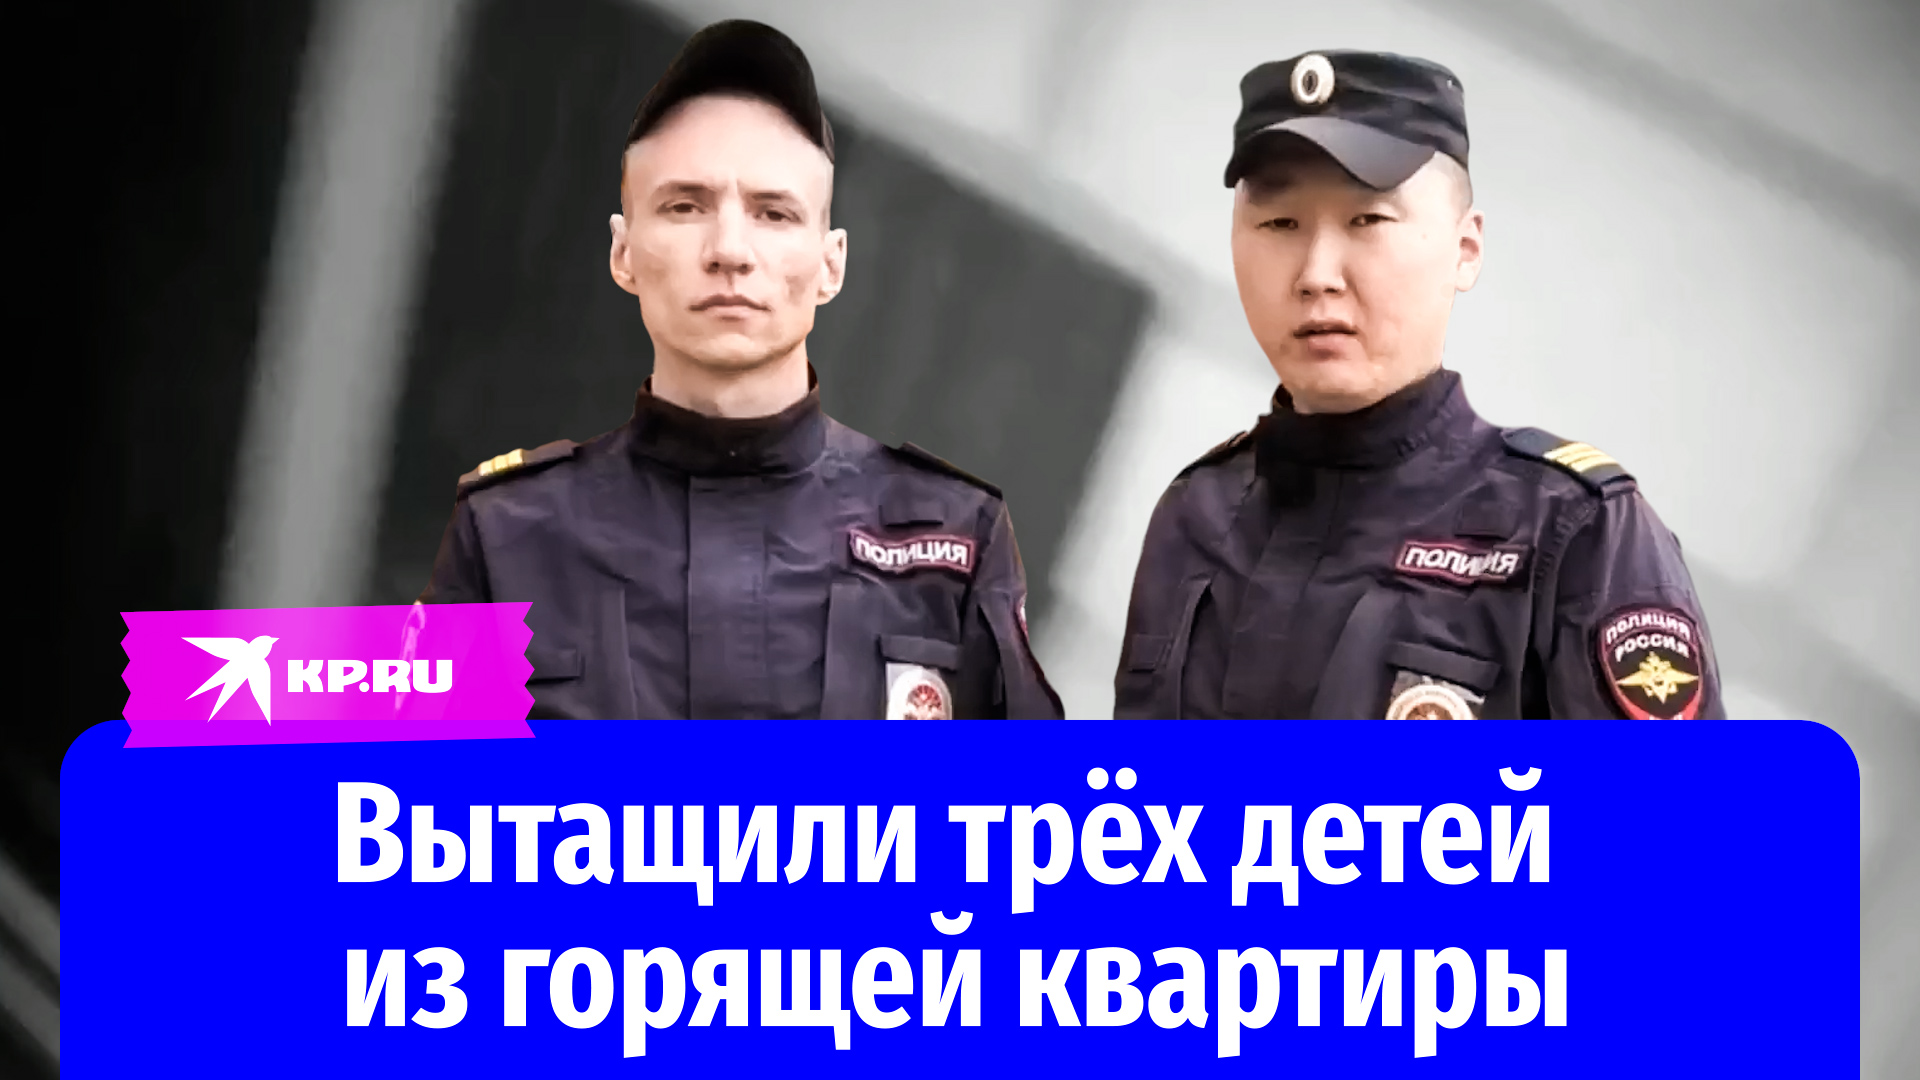 Молодые сержанты спасли детей из горящей квартиры в Иркутске